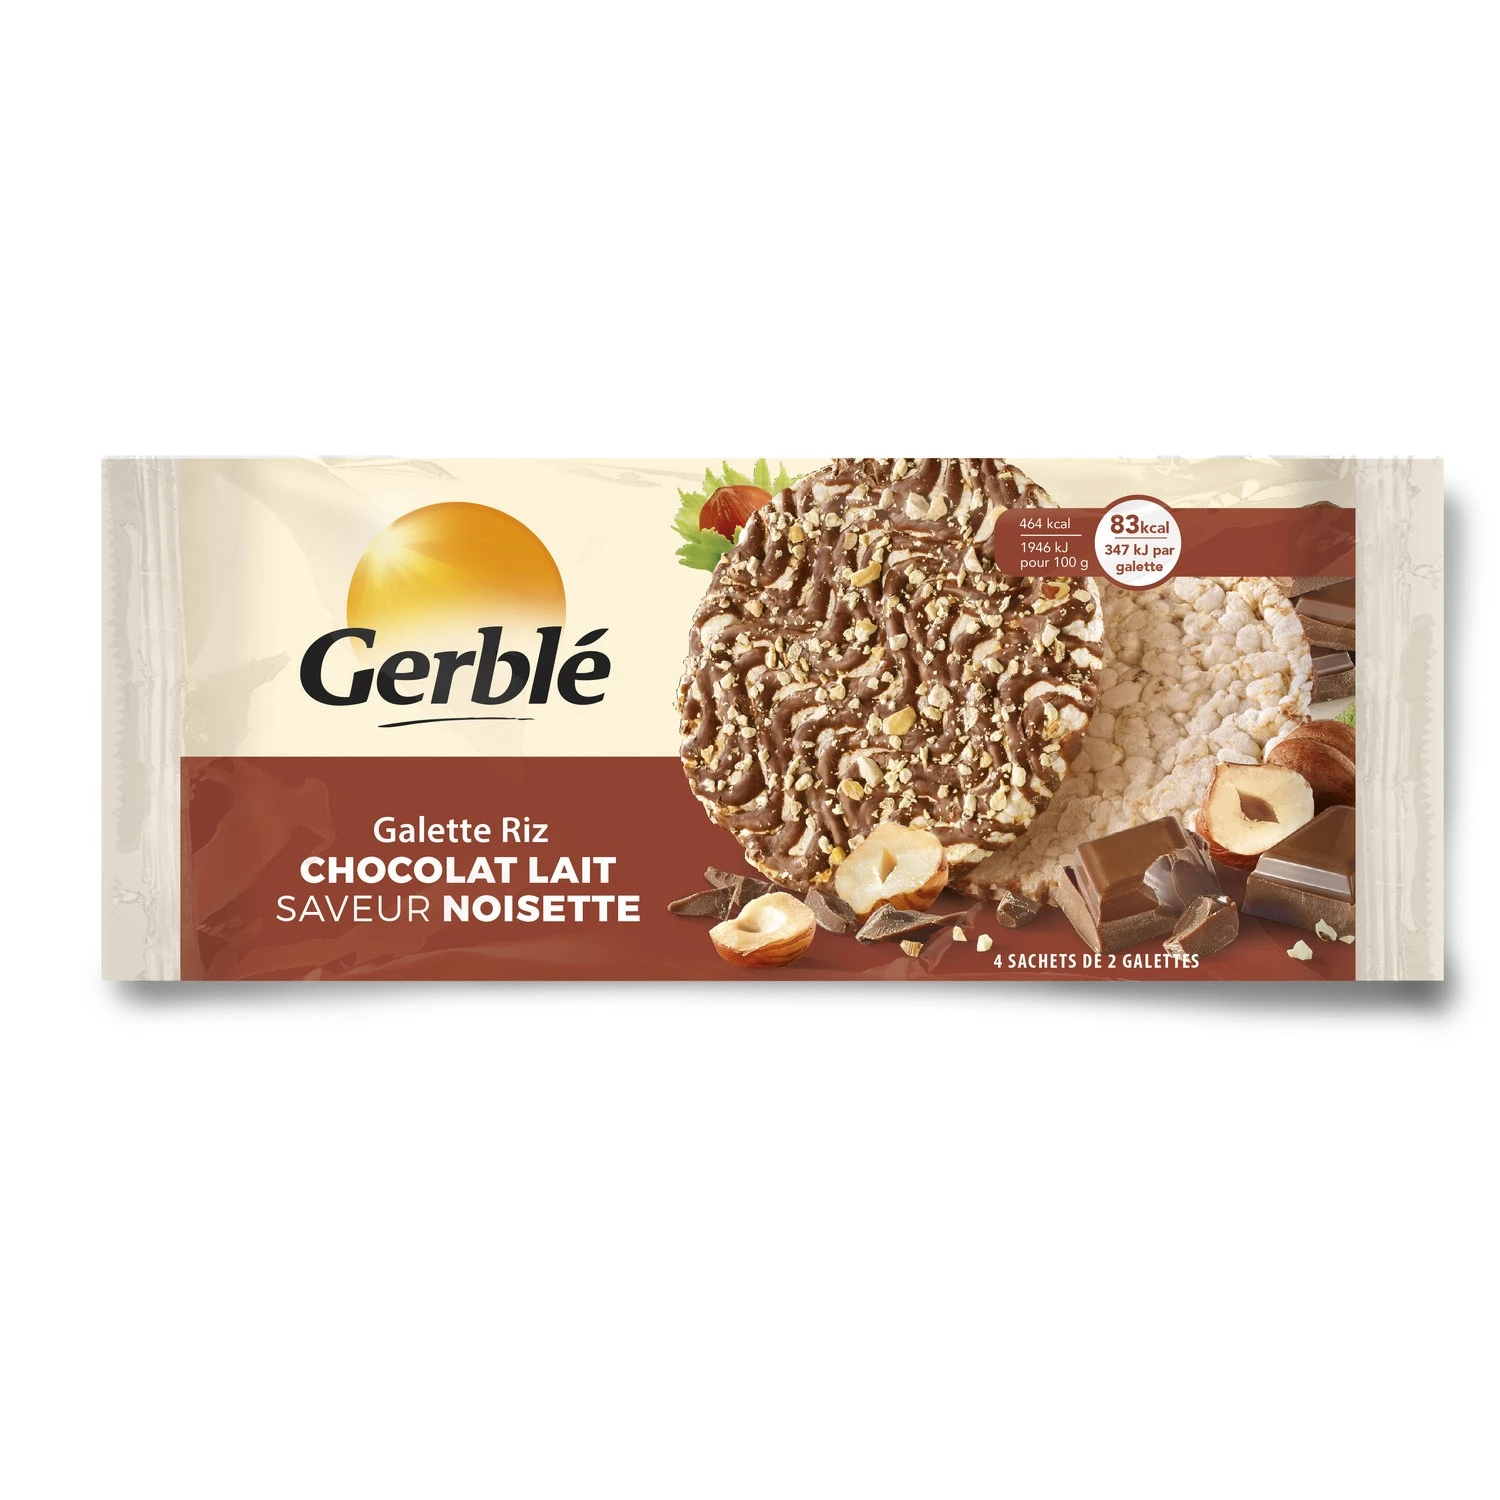 Rijstwafel van melkchocolade met hazelnootsmaak - GERBLÉ